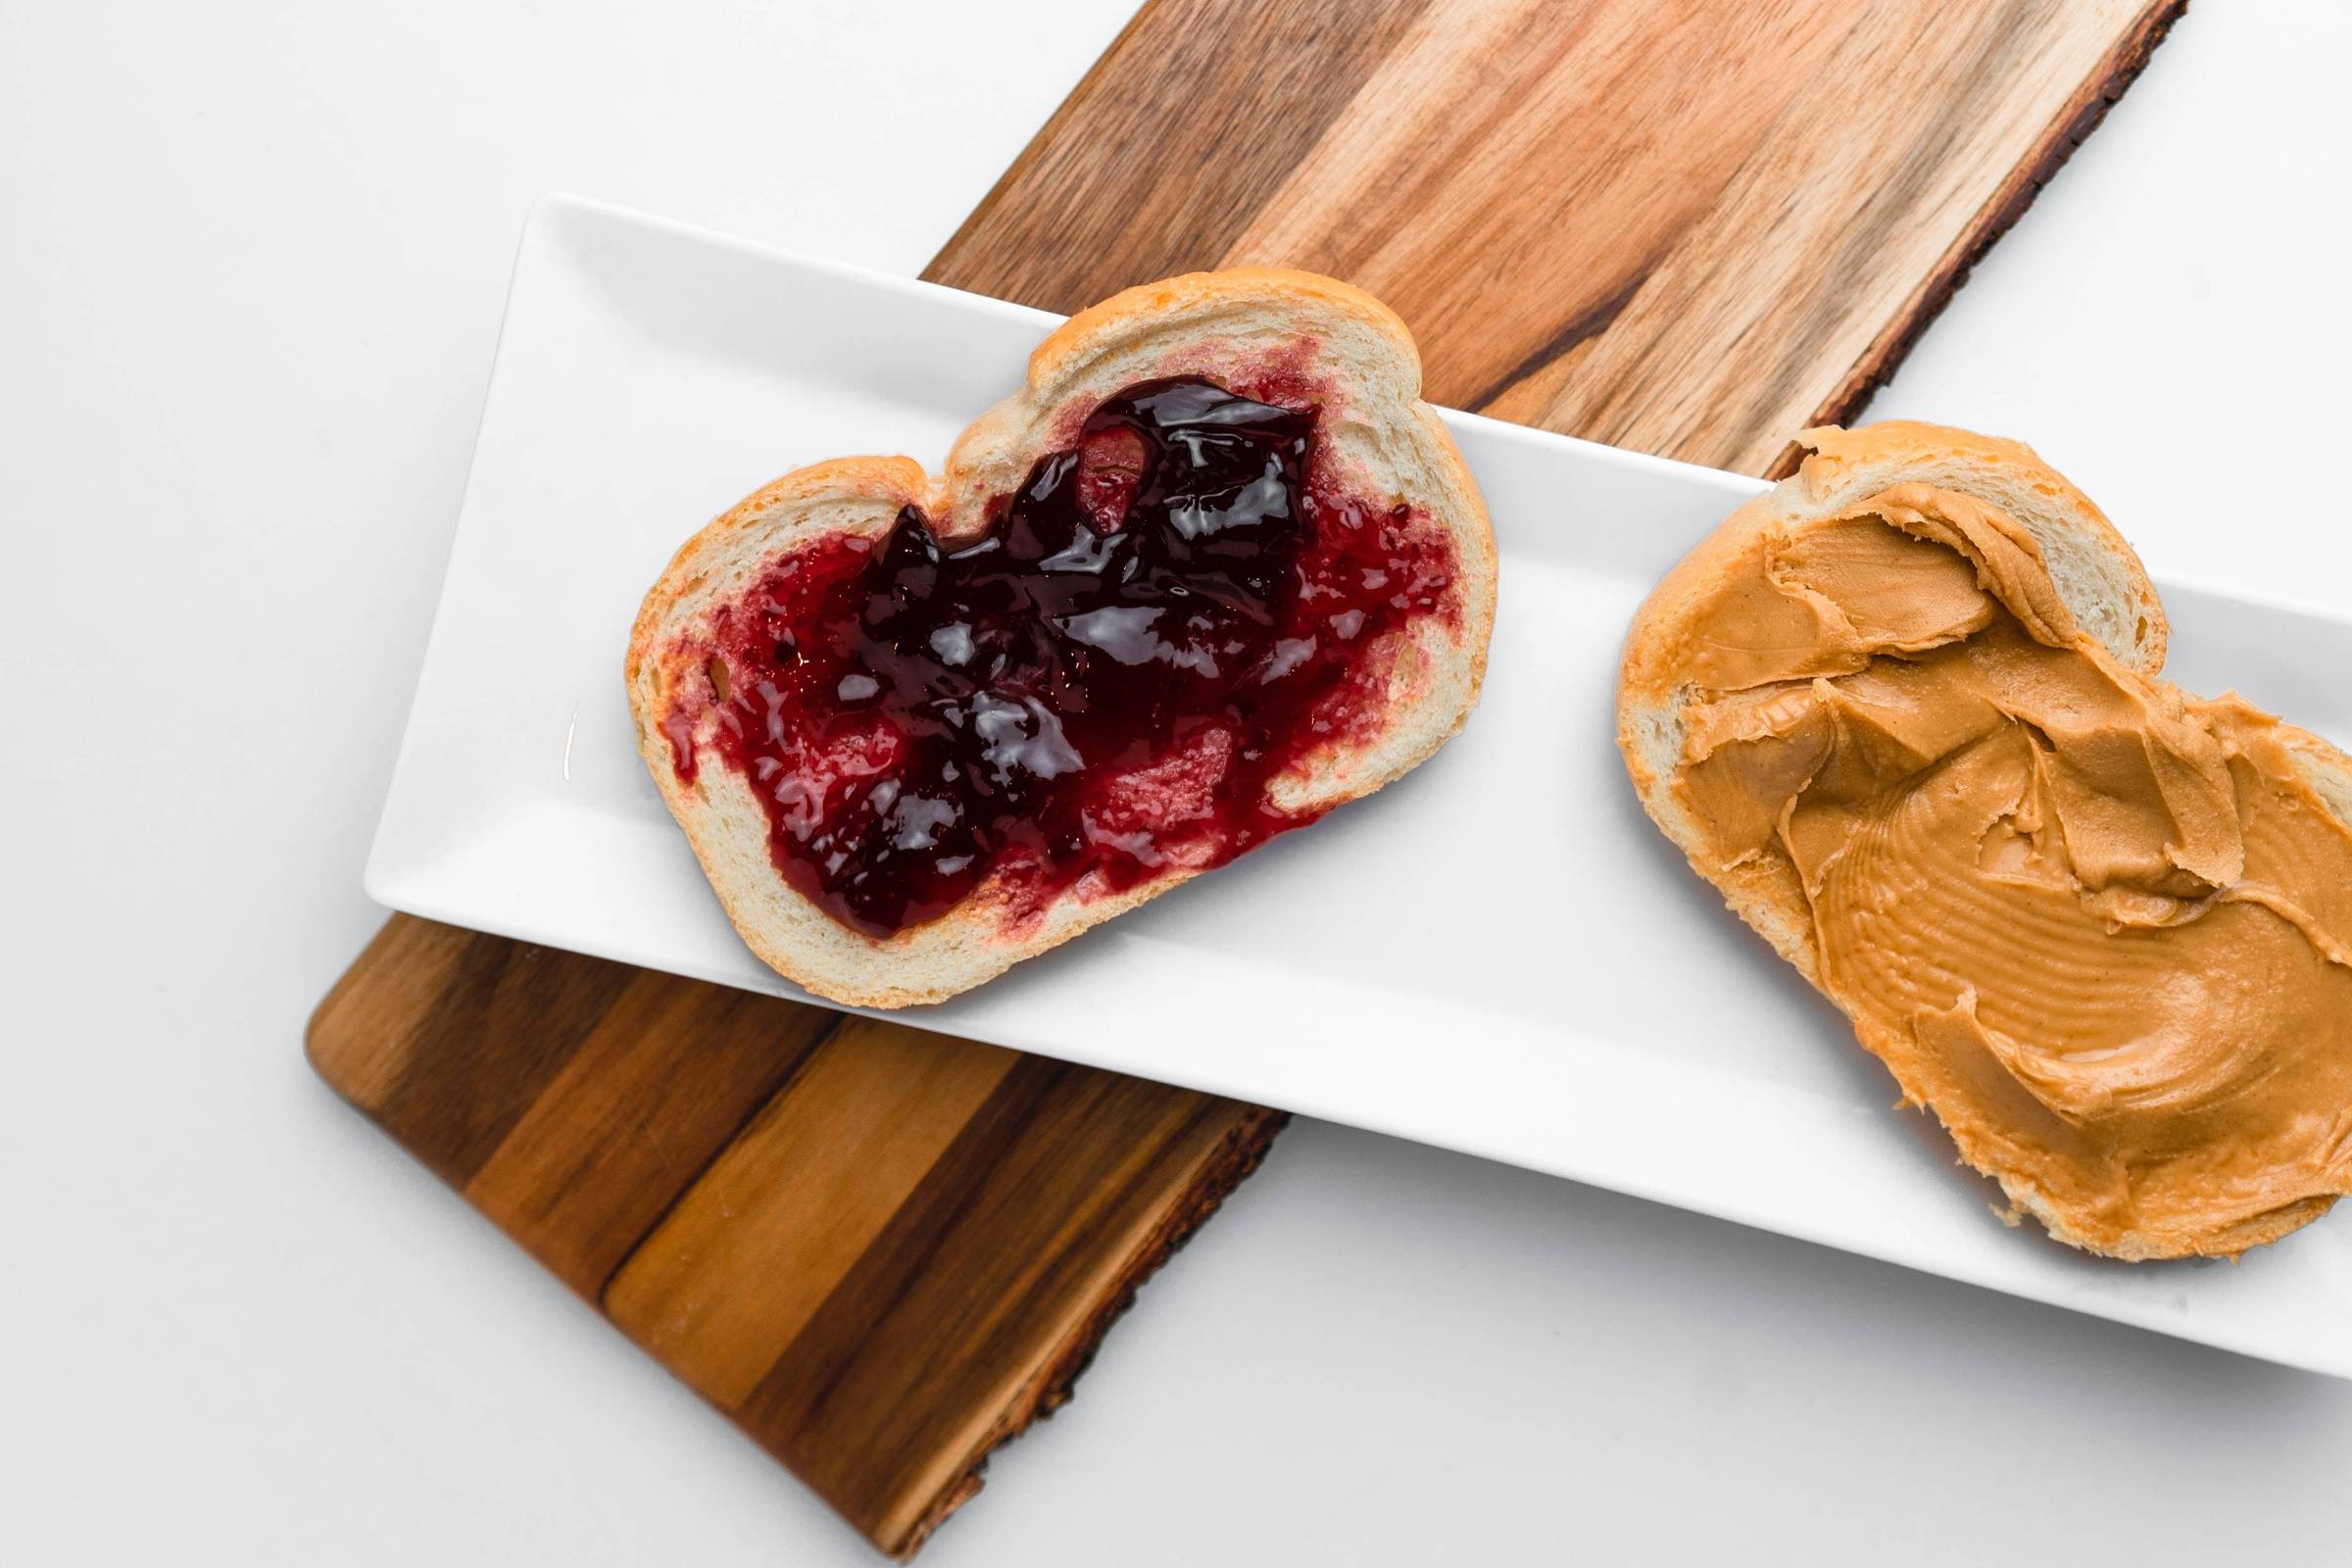 EUA investigam relação entre manteiga de amendoim e surto de salmonella